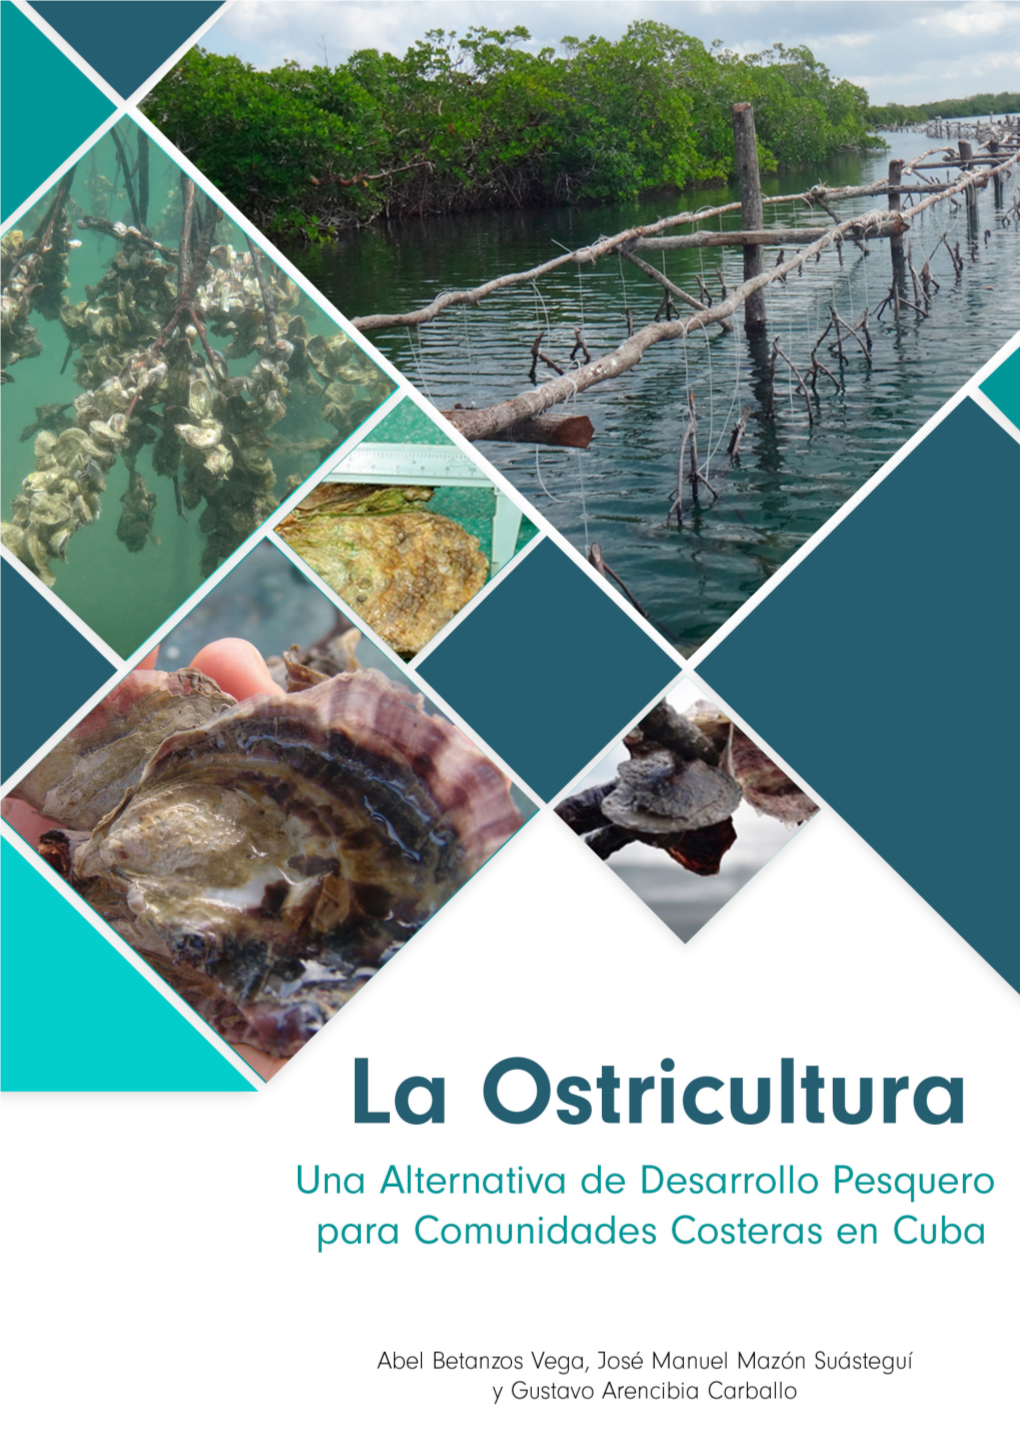 La Ostricultura: Una Alternativa De Desarrollo Pesquero Para Comunidades Costeras En Cuba